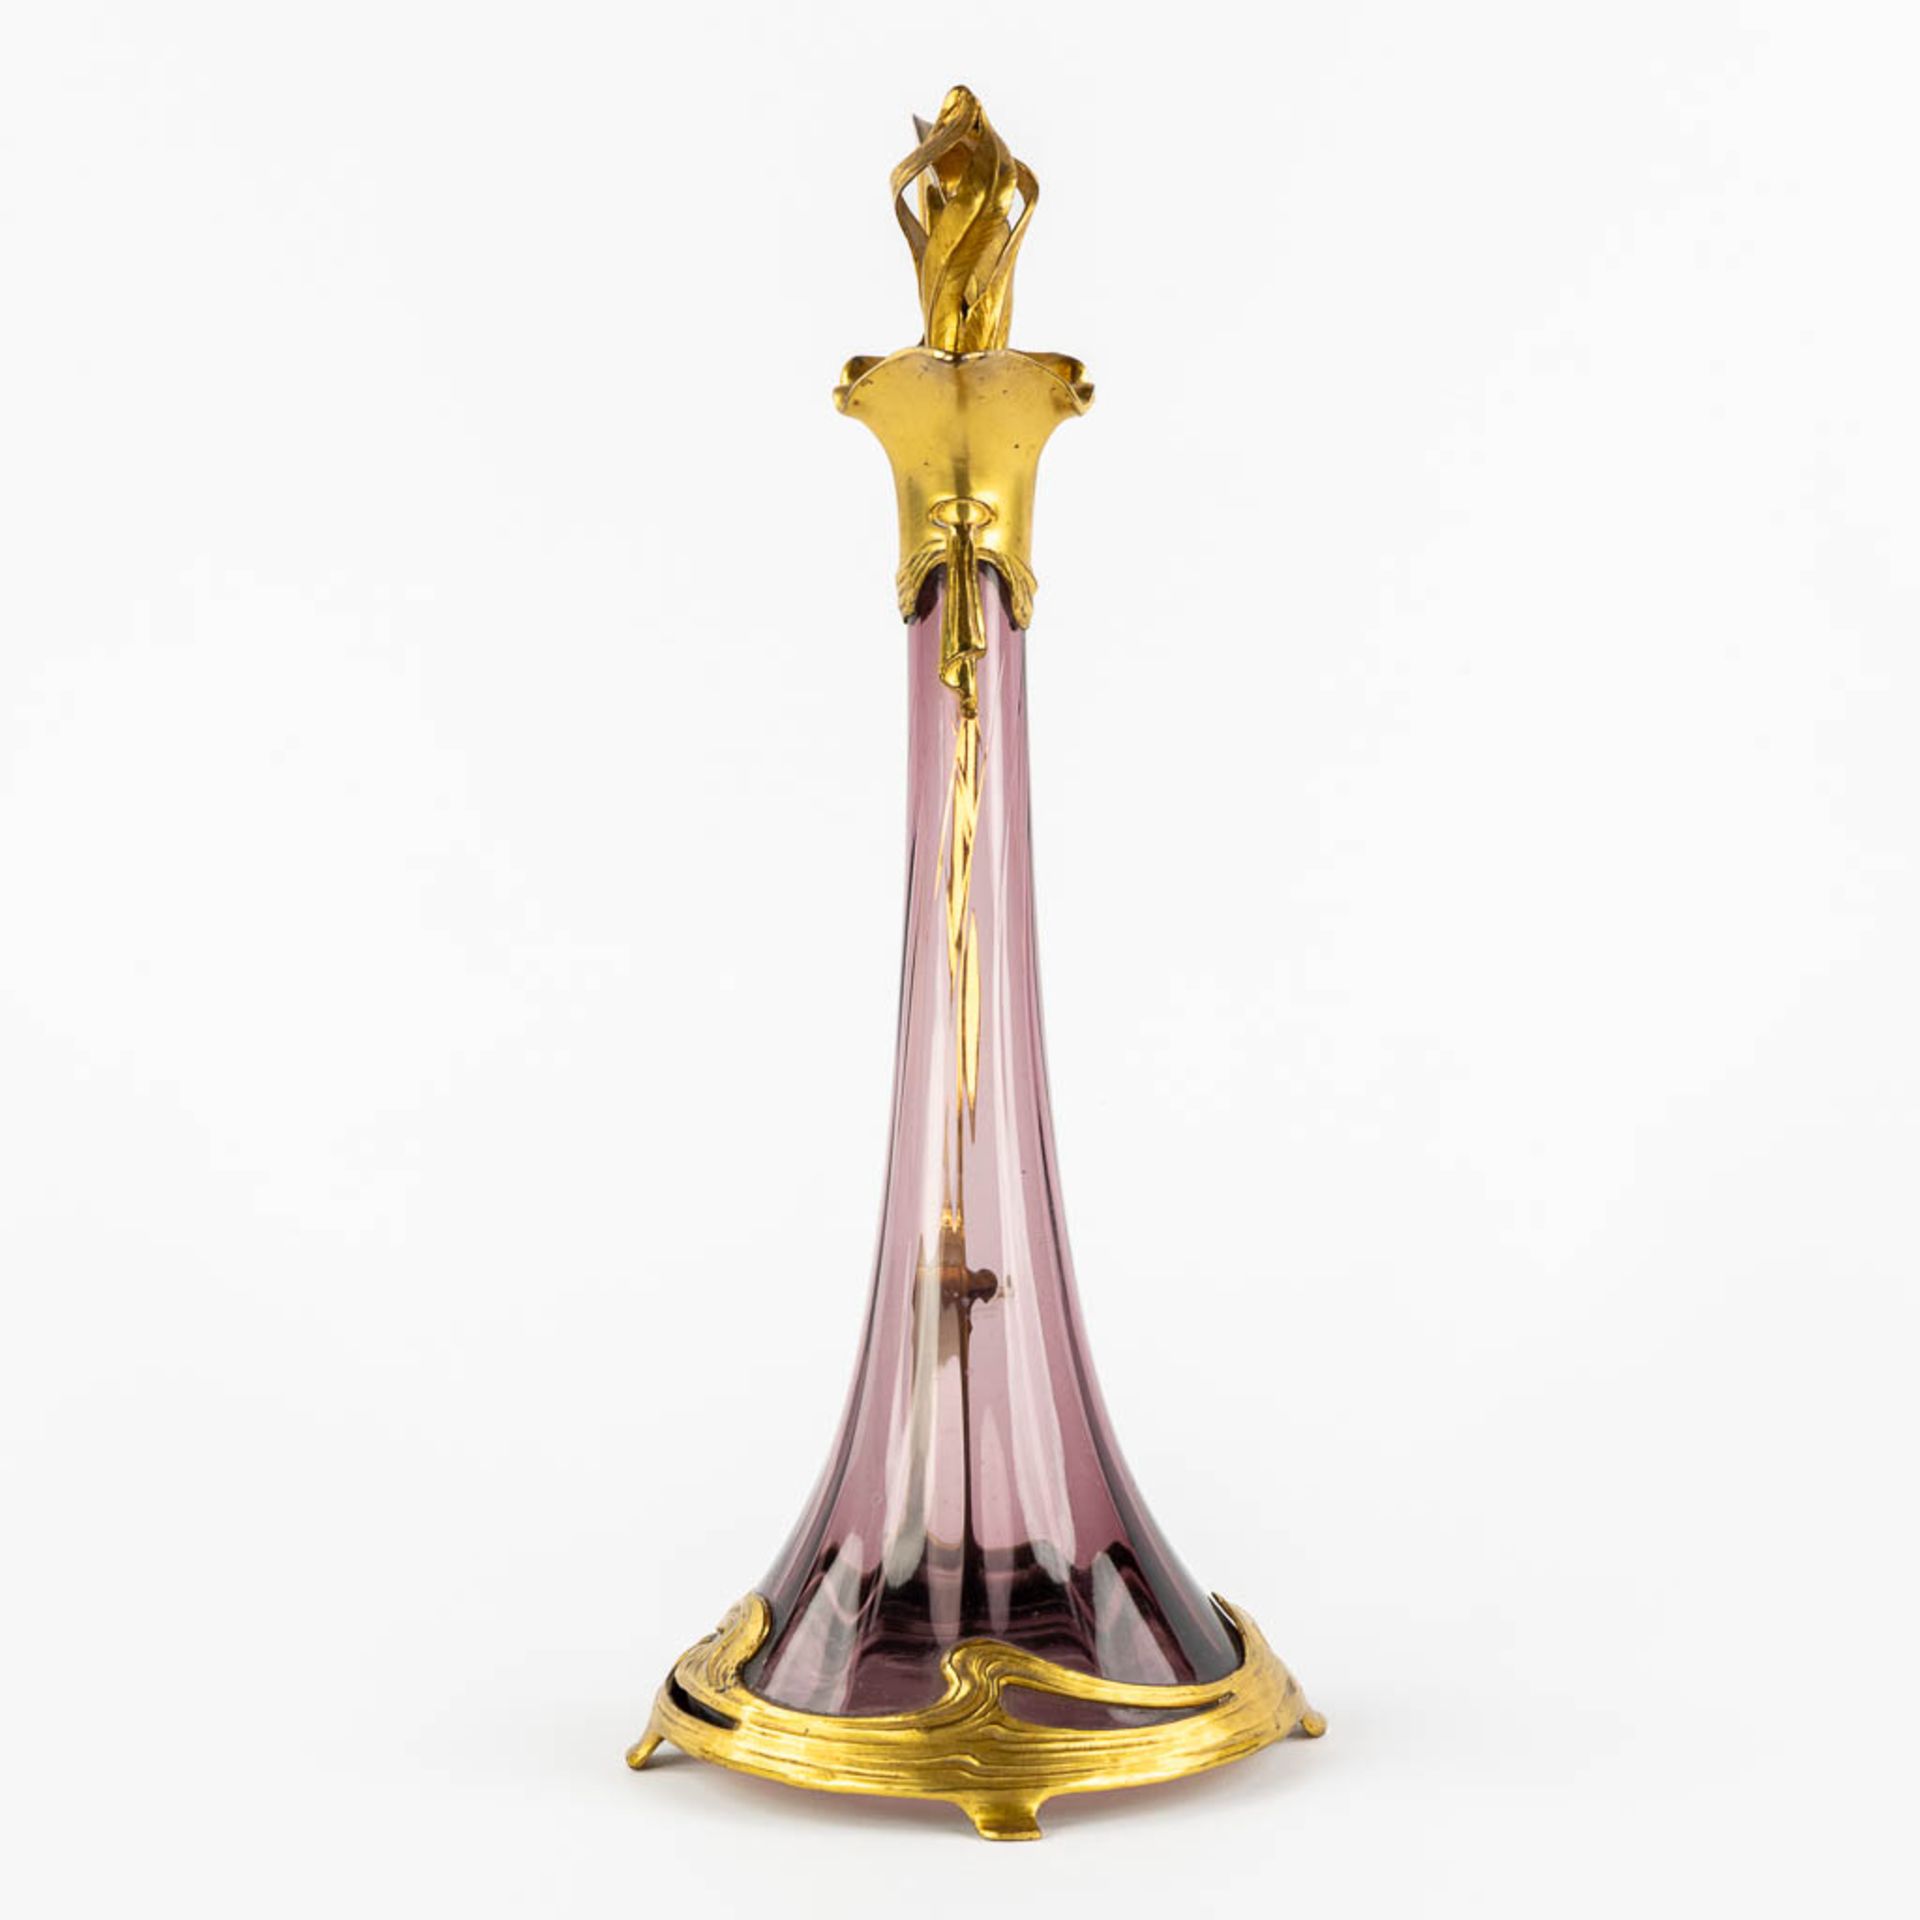 A pitcher, gilt metal and purple glass, Art Nouveau. (L:16 x W:20 x H:39 cm) - Image 6 of 11